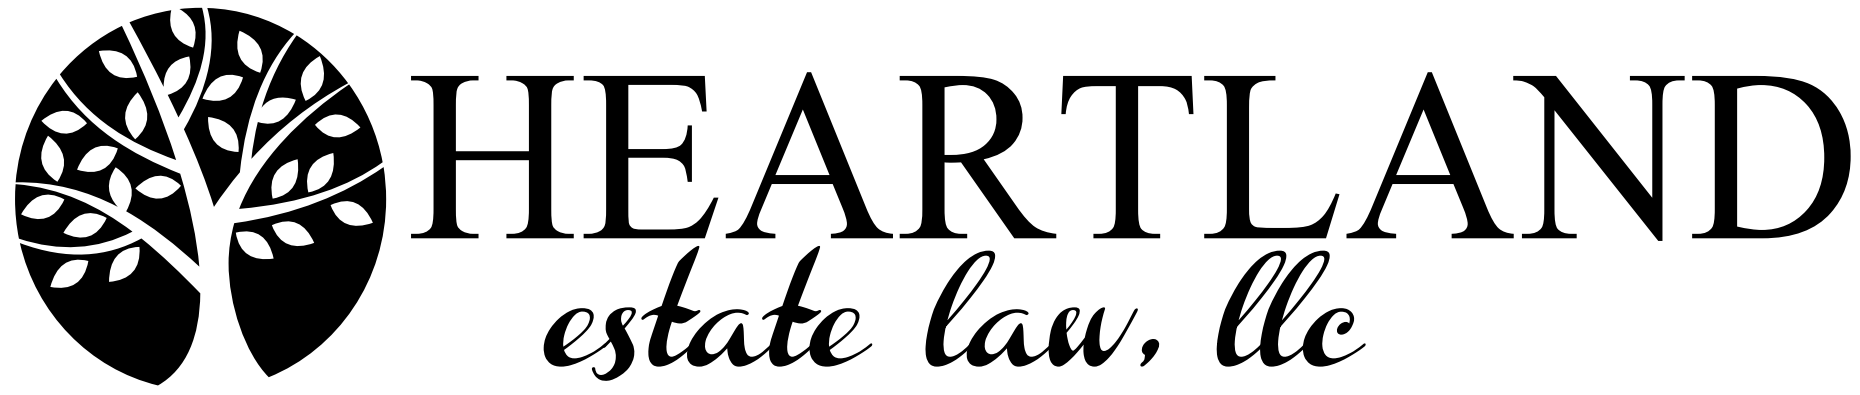 Heartland Estate Law, LLC